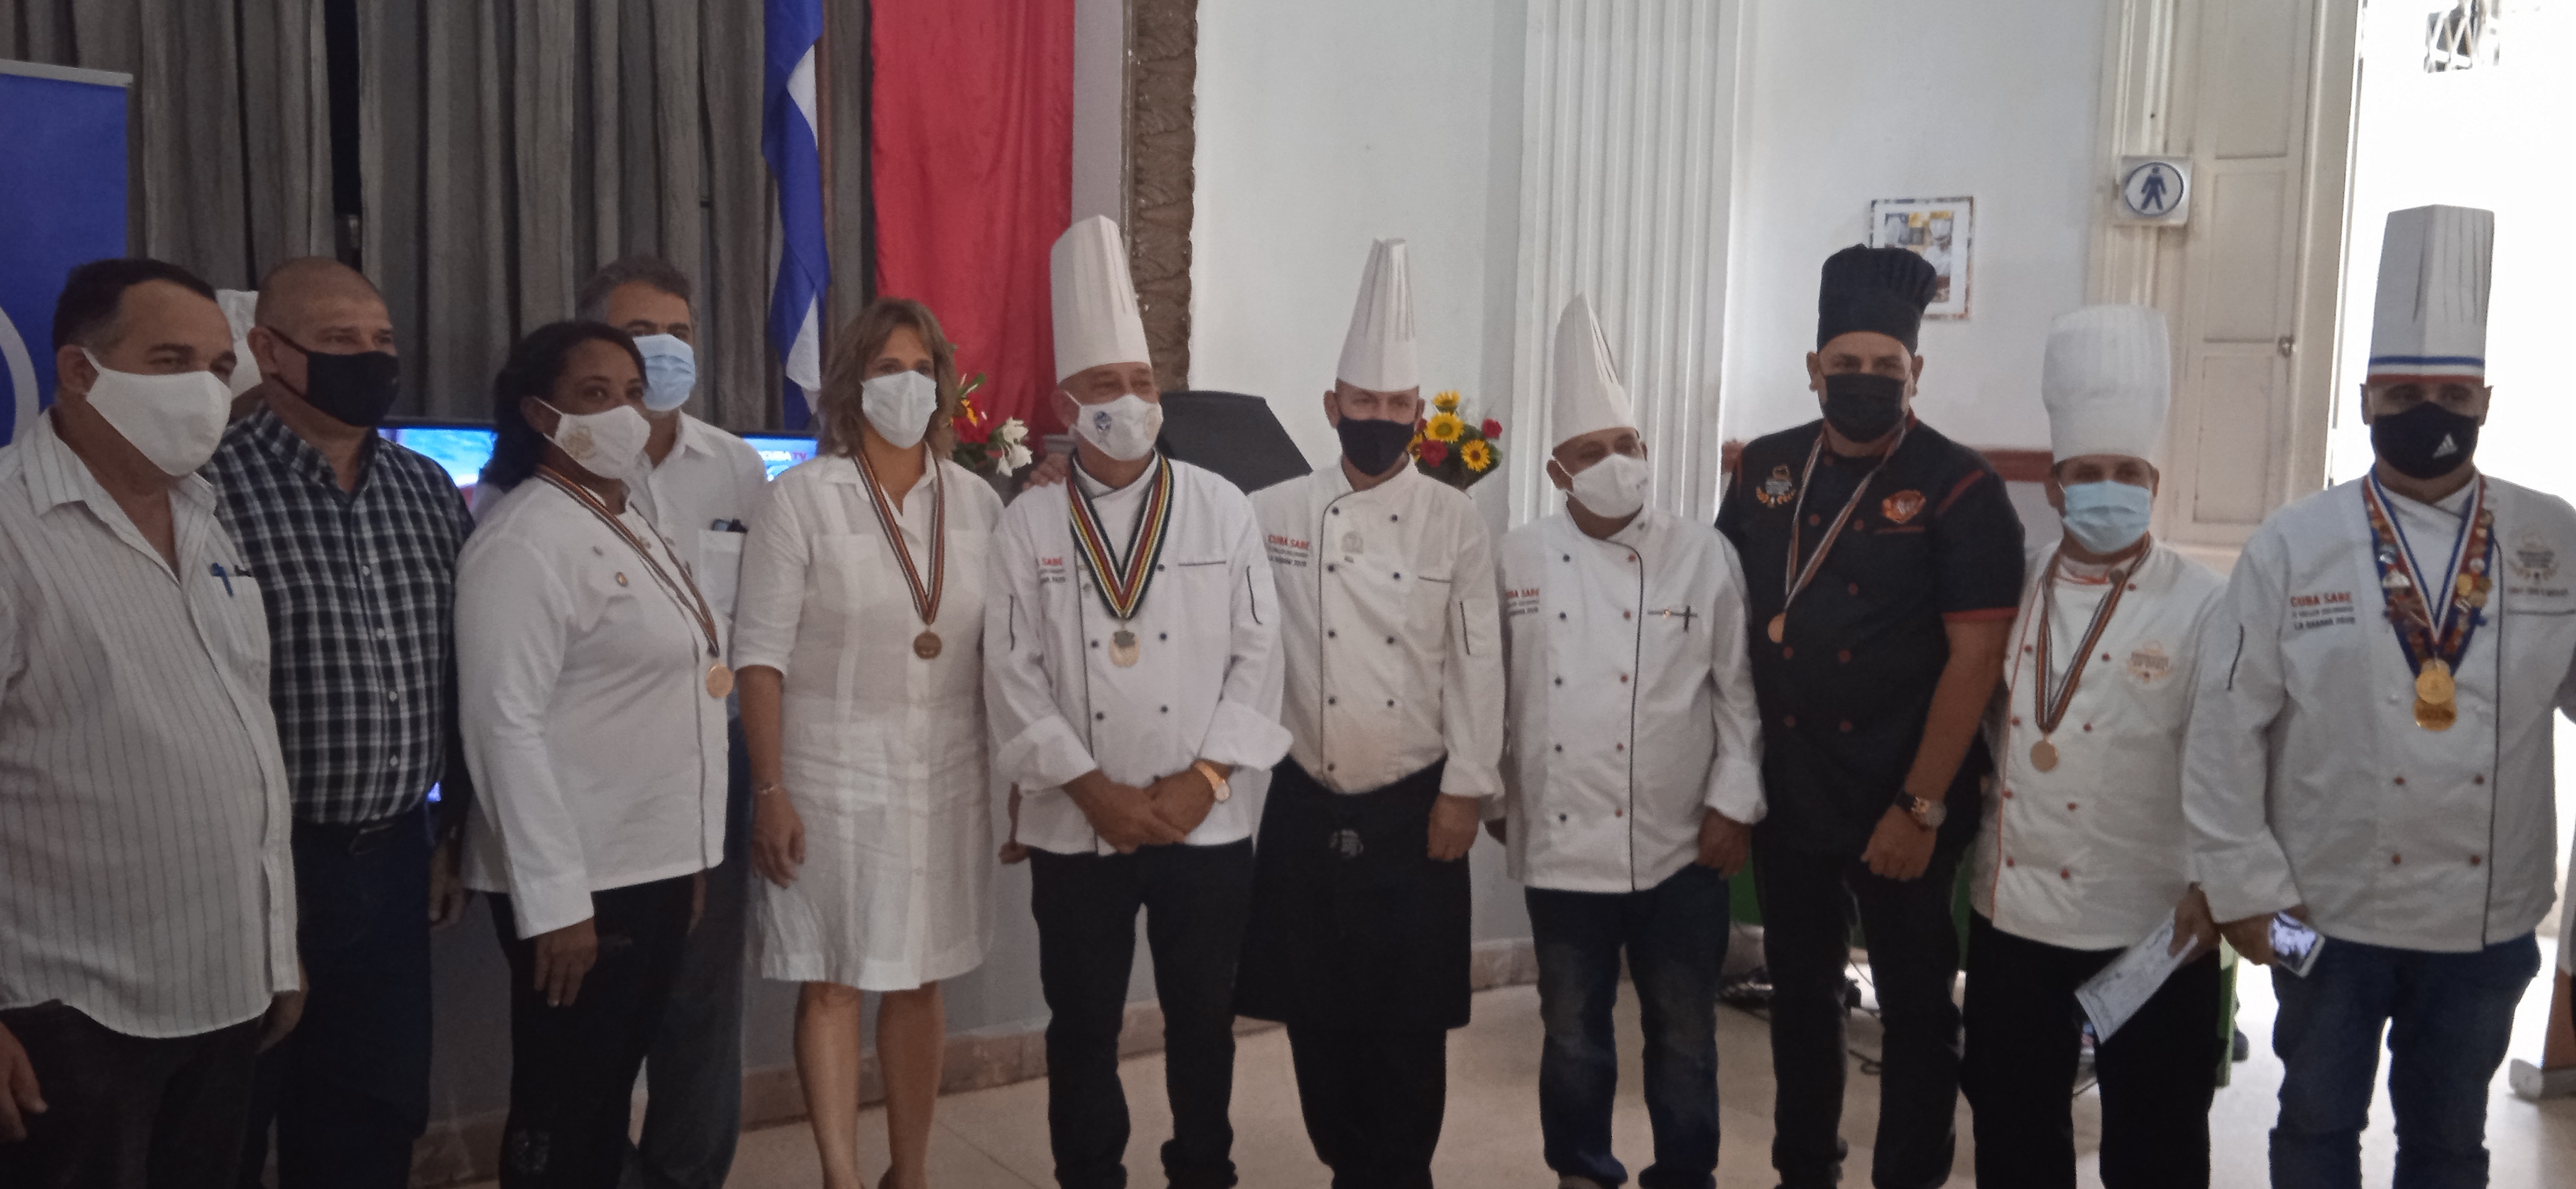 Chefs de la cocina cubana